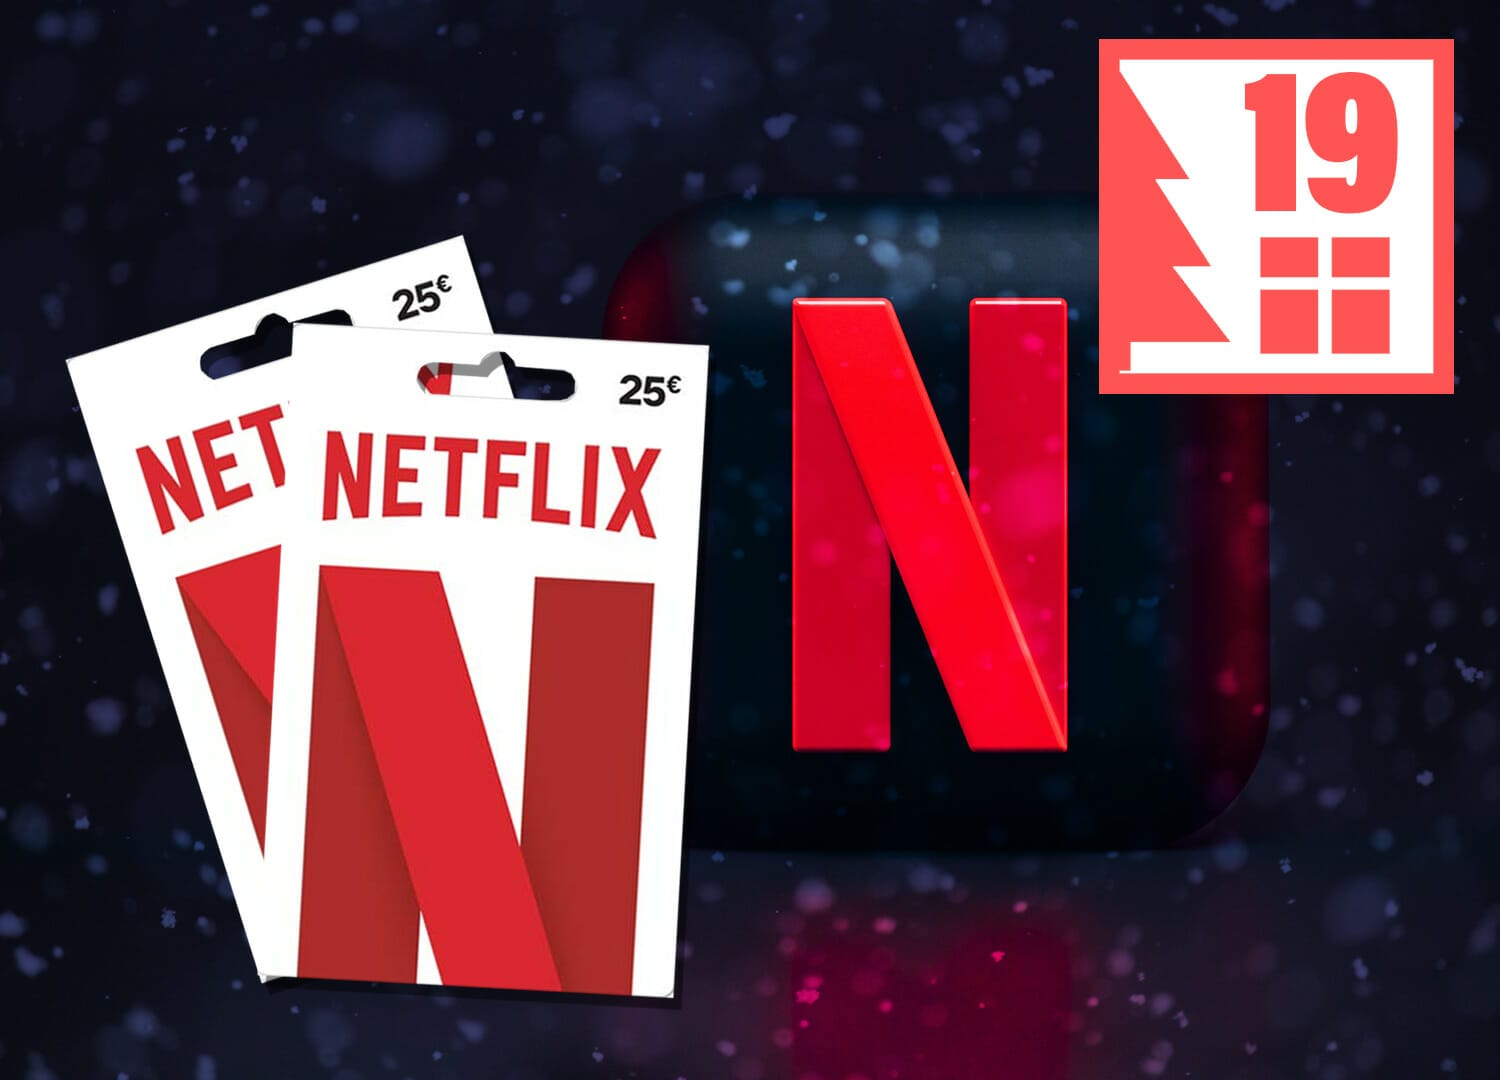 Euro von 25 2x 4K je Netflix-Gutscheinkarte im Filme Gewinnspiel: Wert -